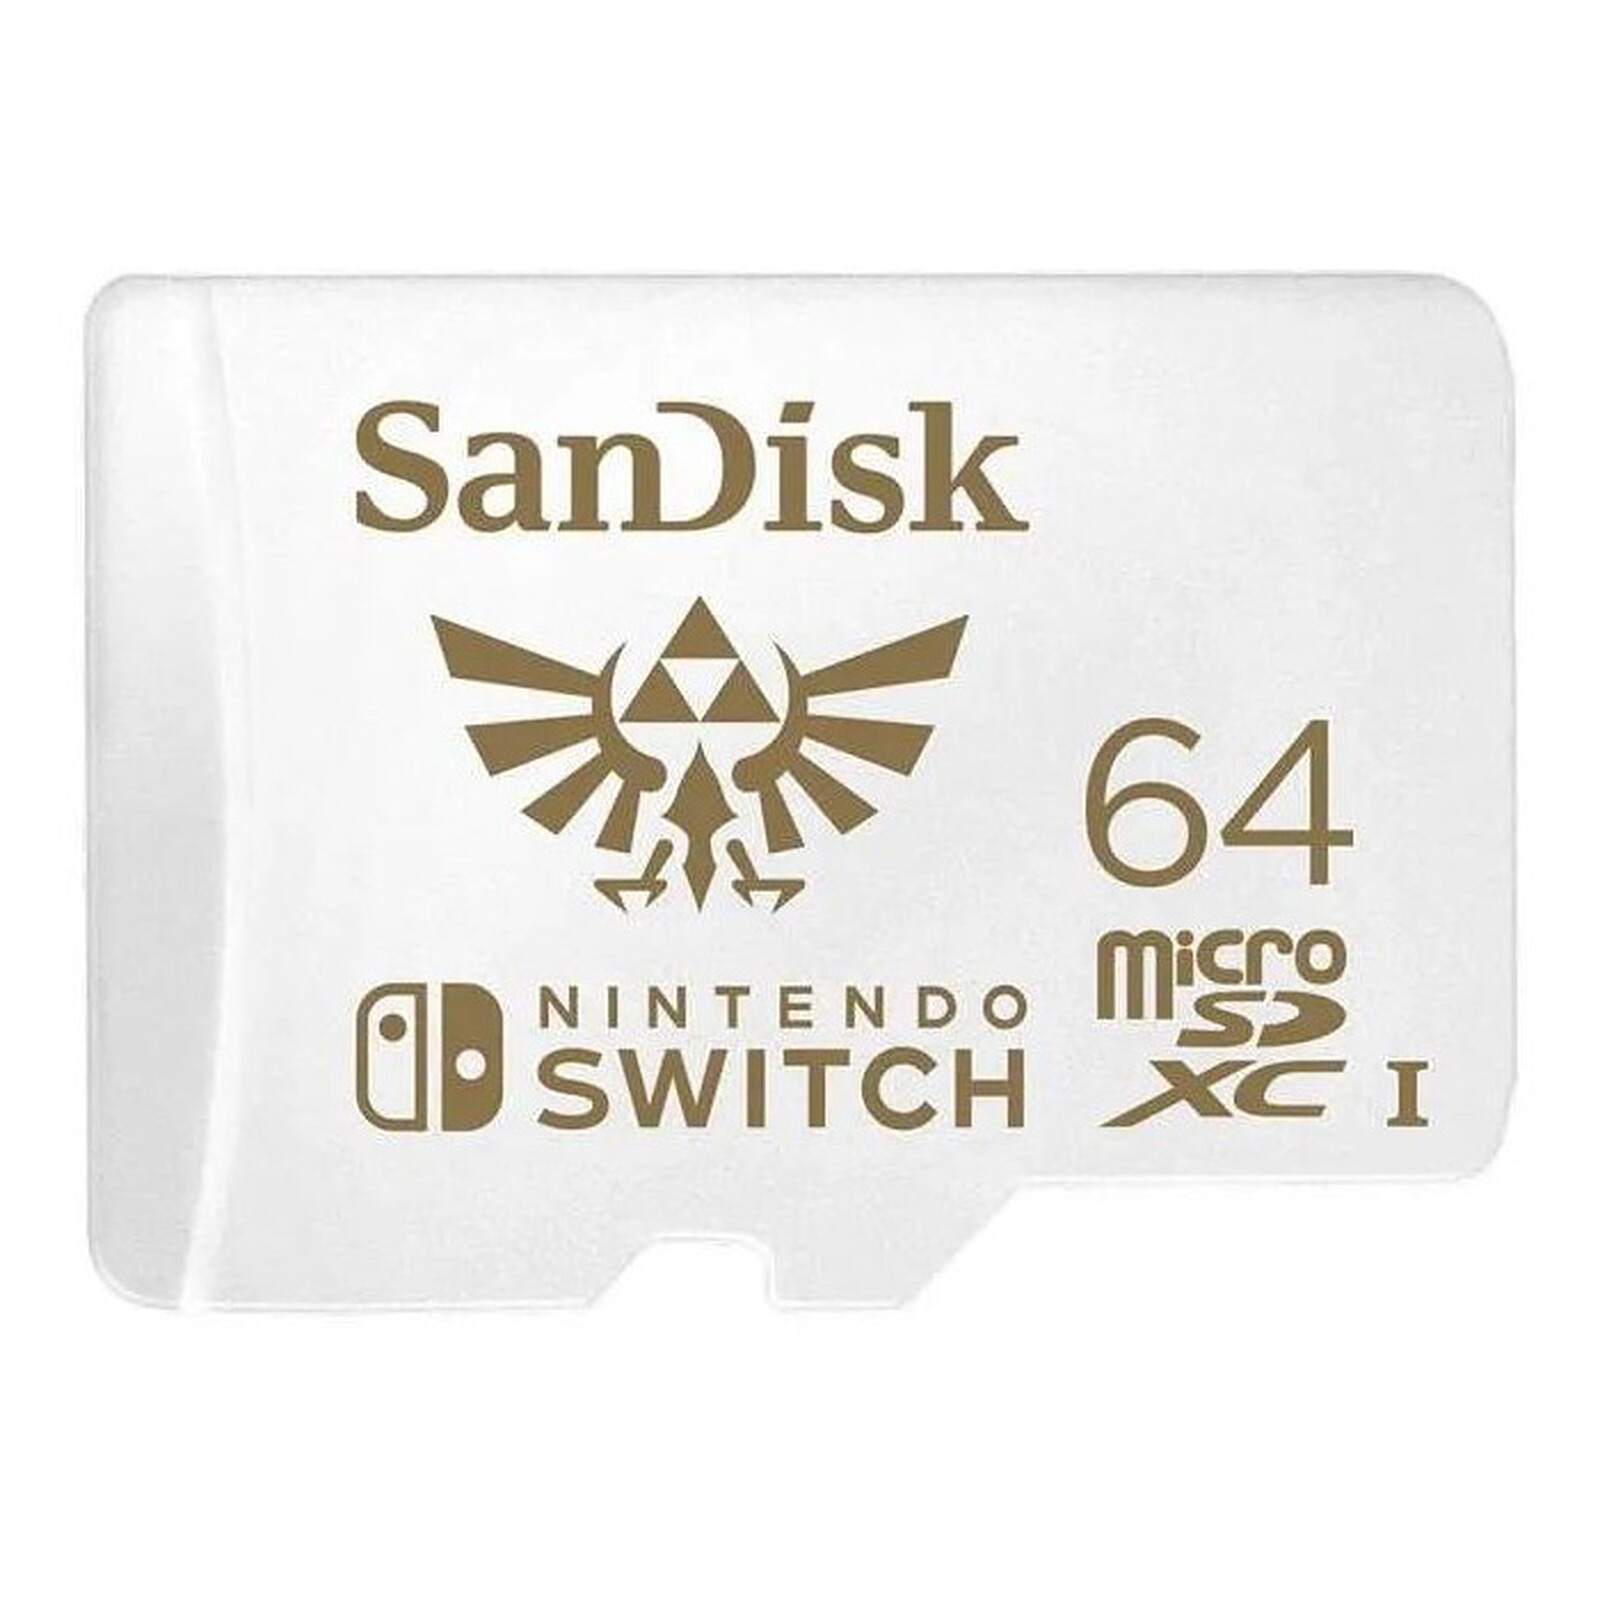 Carte mémoire microSDXC 100 Mo/s 512 Go de SanDisk pour Nintendo Switch